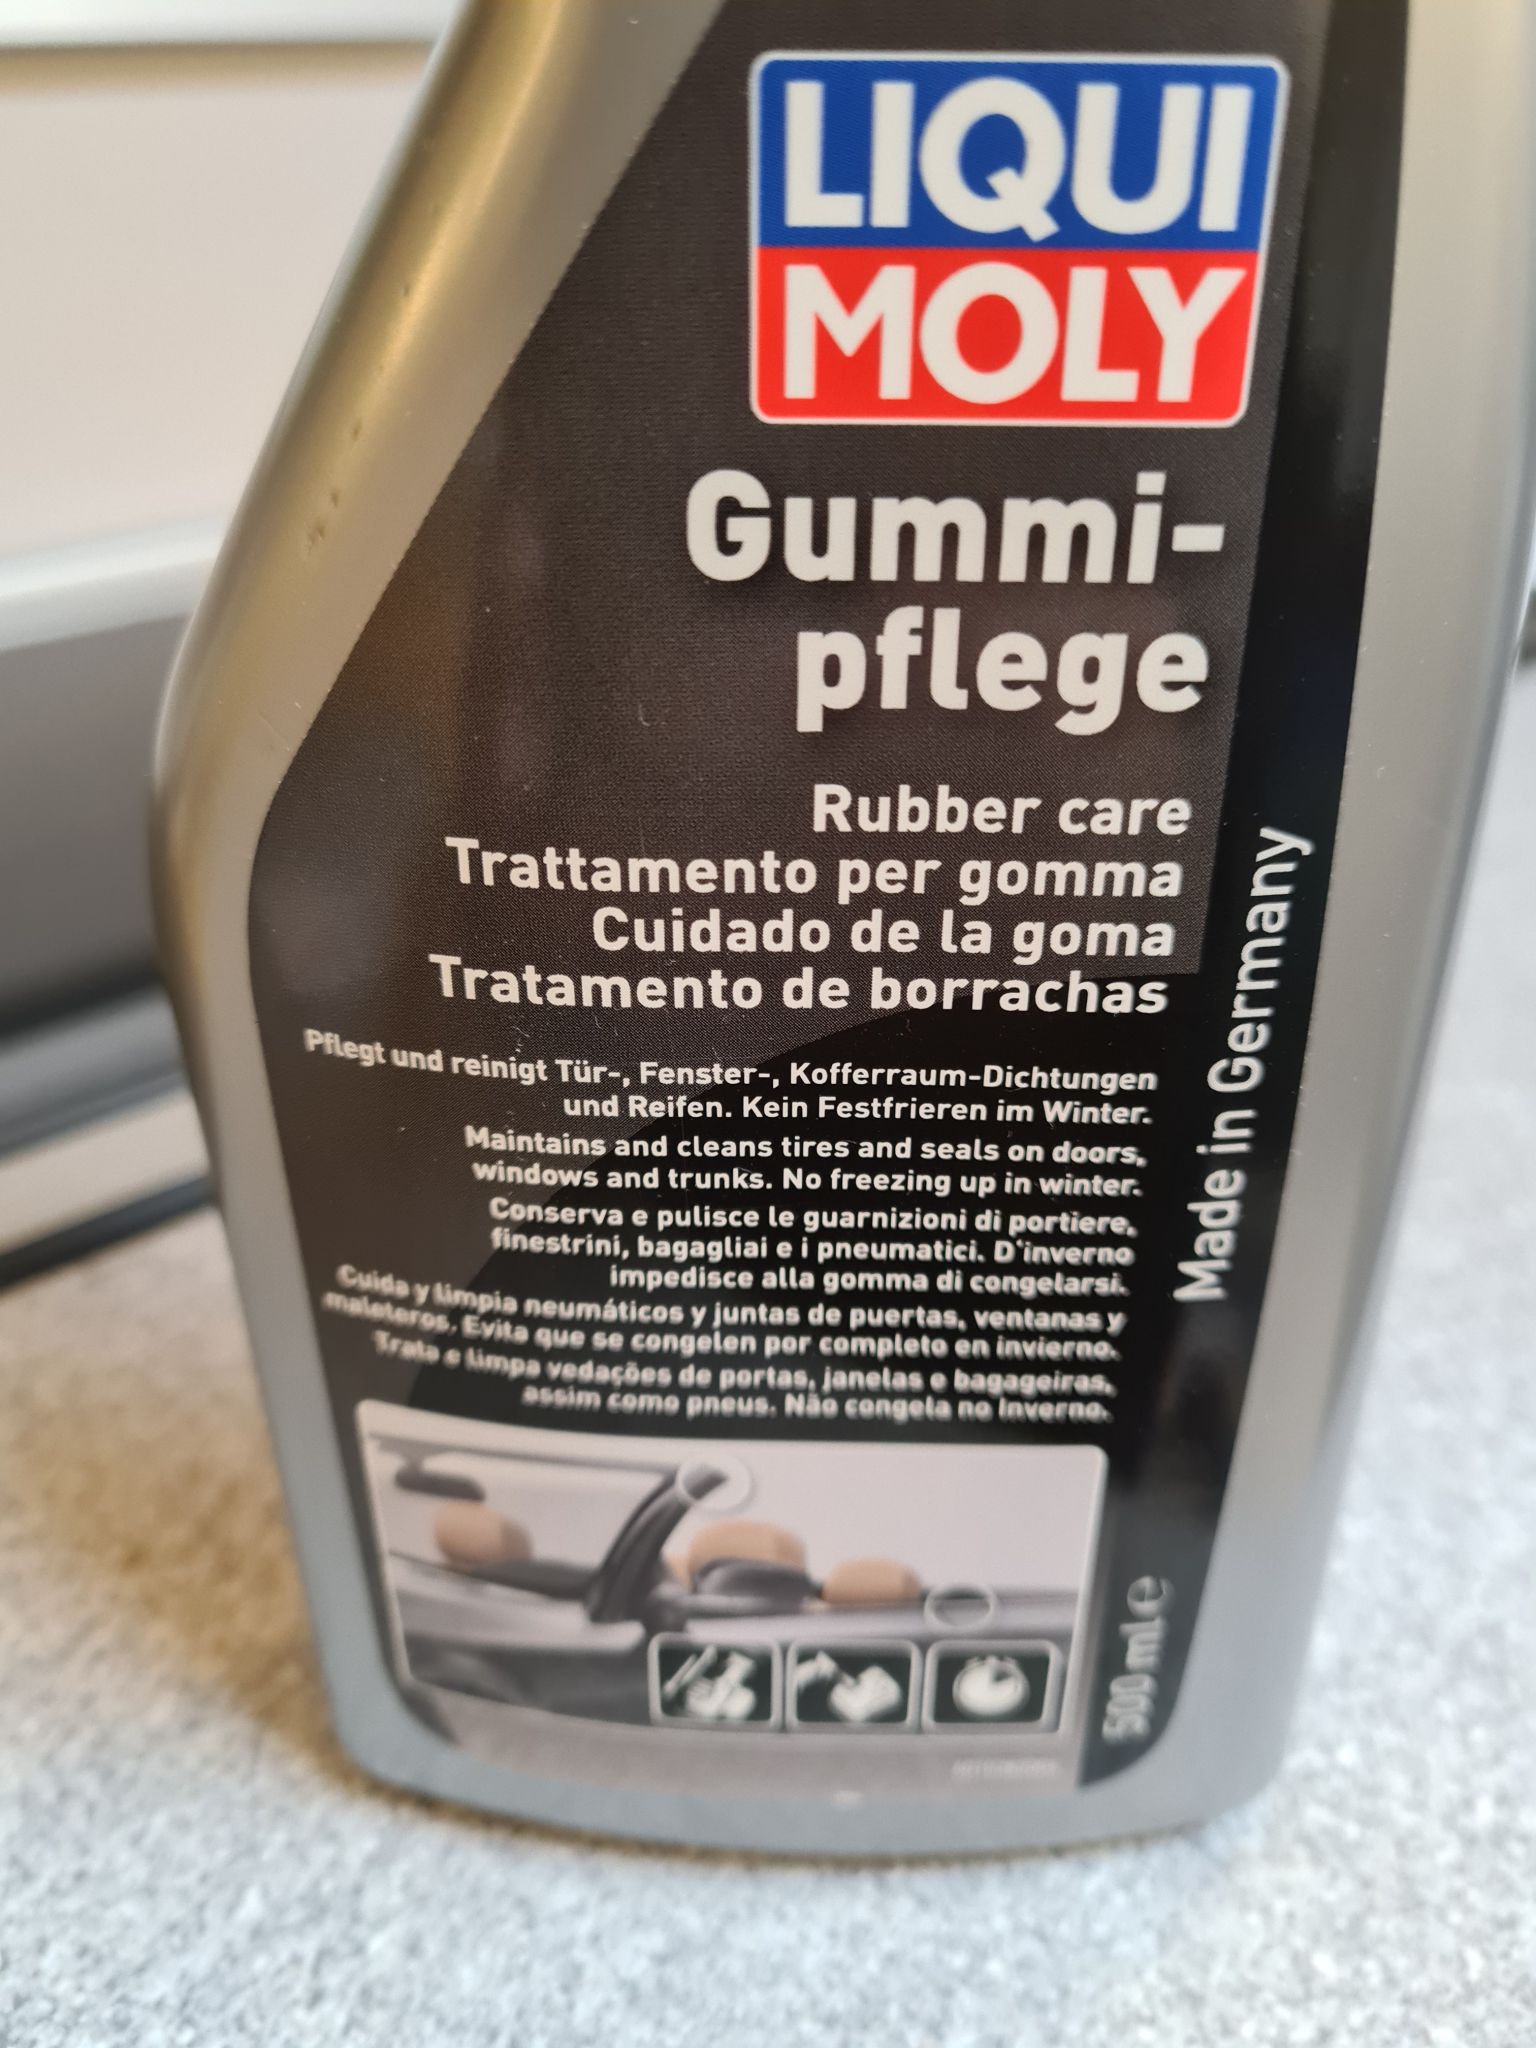 Купить средство для ухода за резиной LIQUI MOLY Gummi-pflege 500